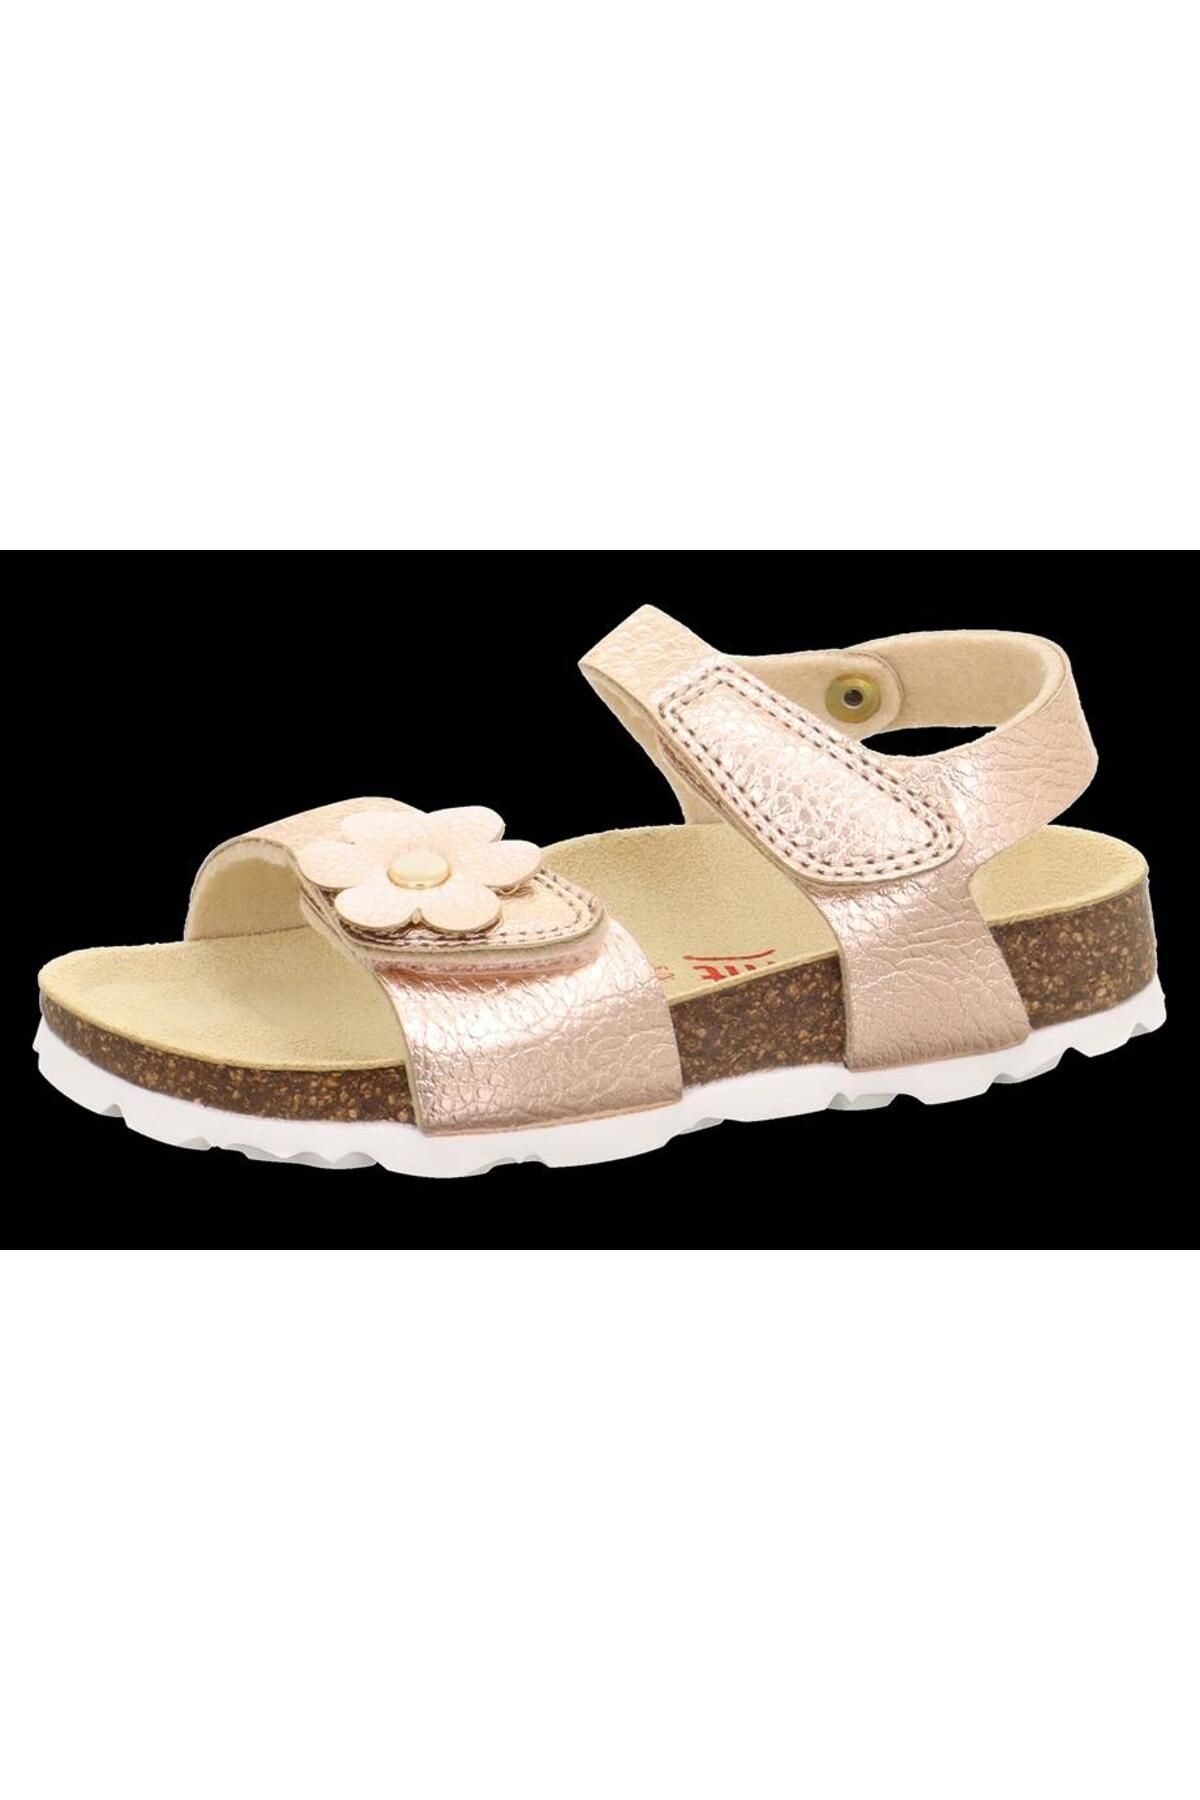 Superfit Bakır Kız Çocuk Sandalet Bıos 1-000118-9700-2